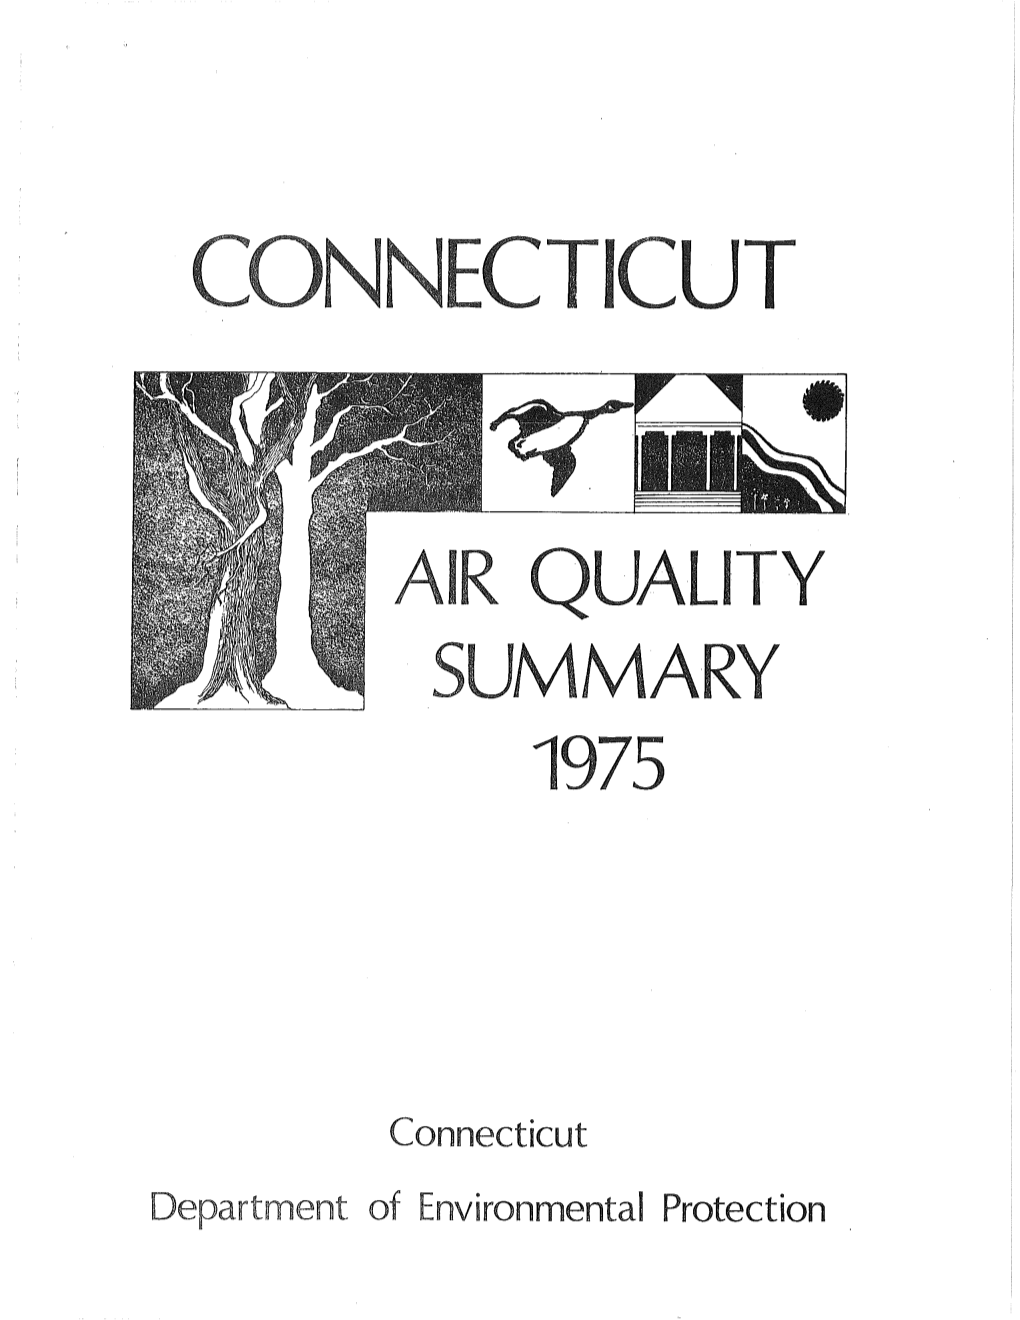 1975 Air Quality Summary